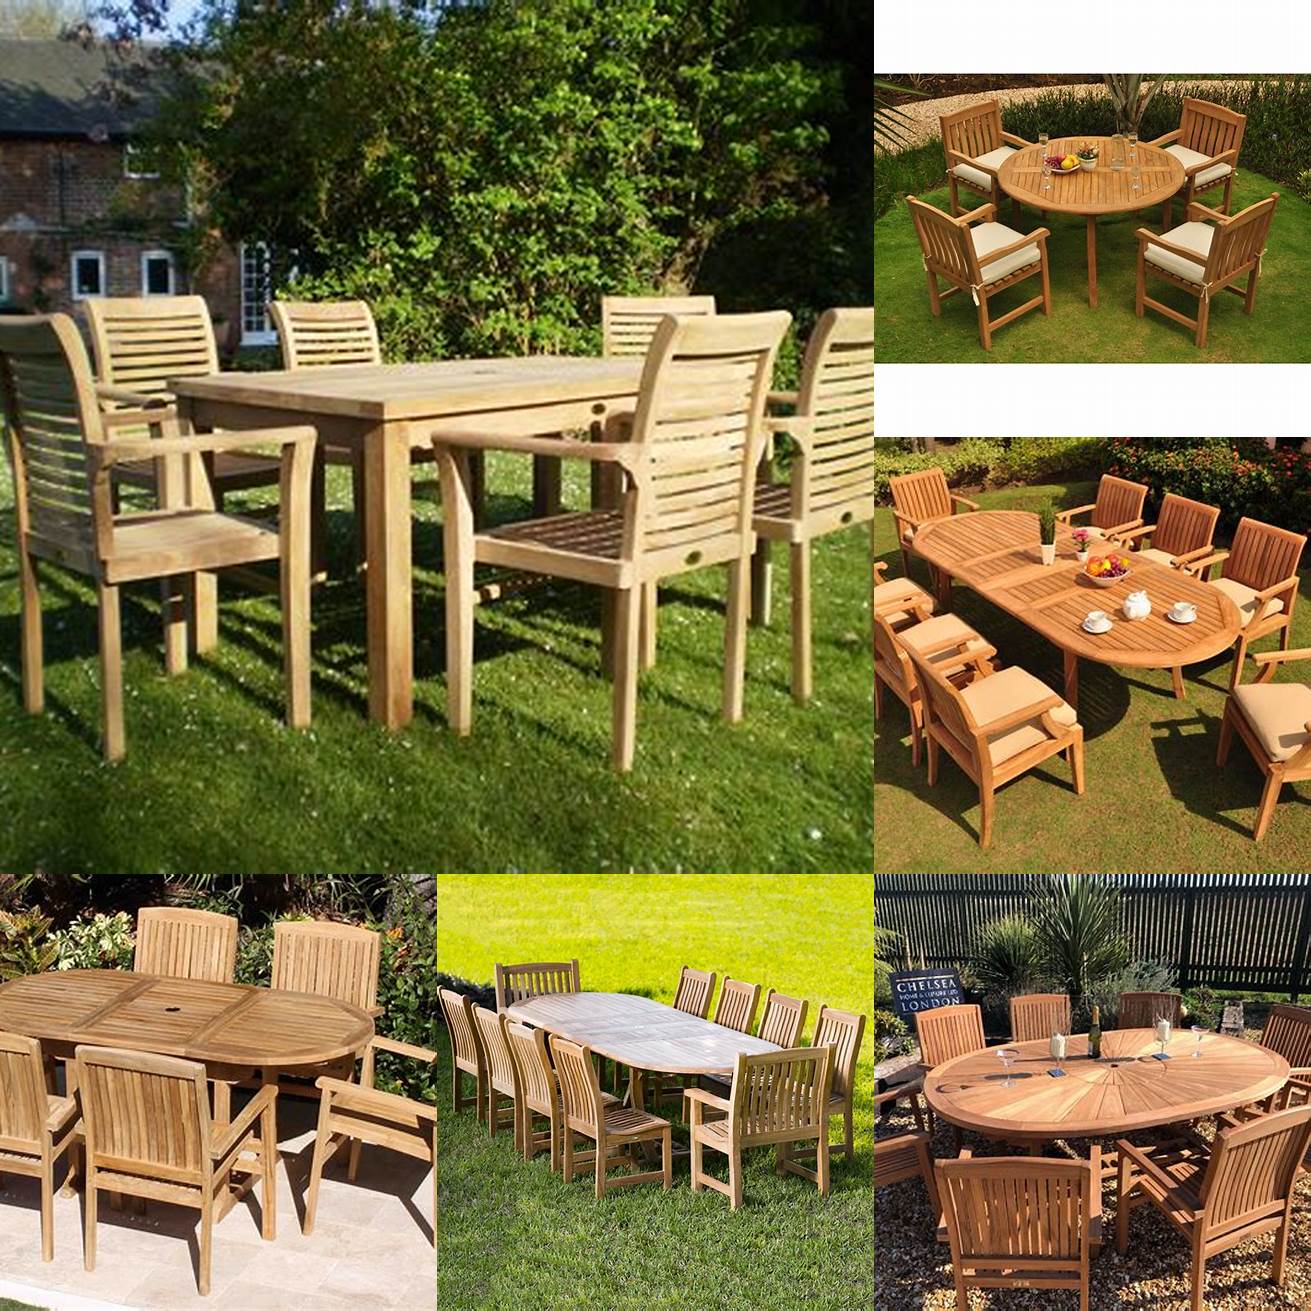 Teak wood garden furniture